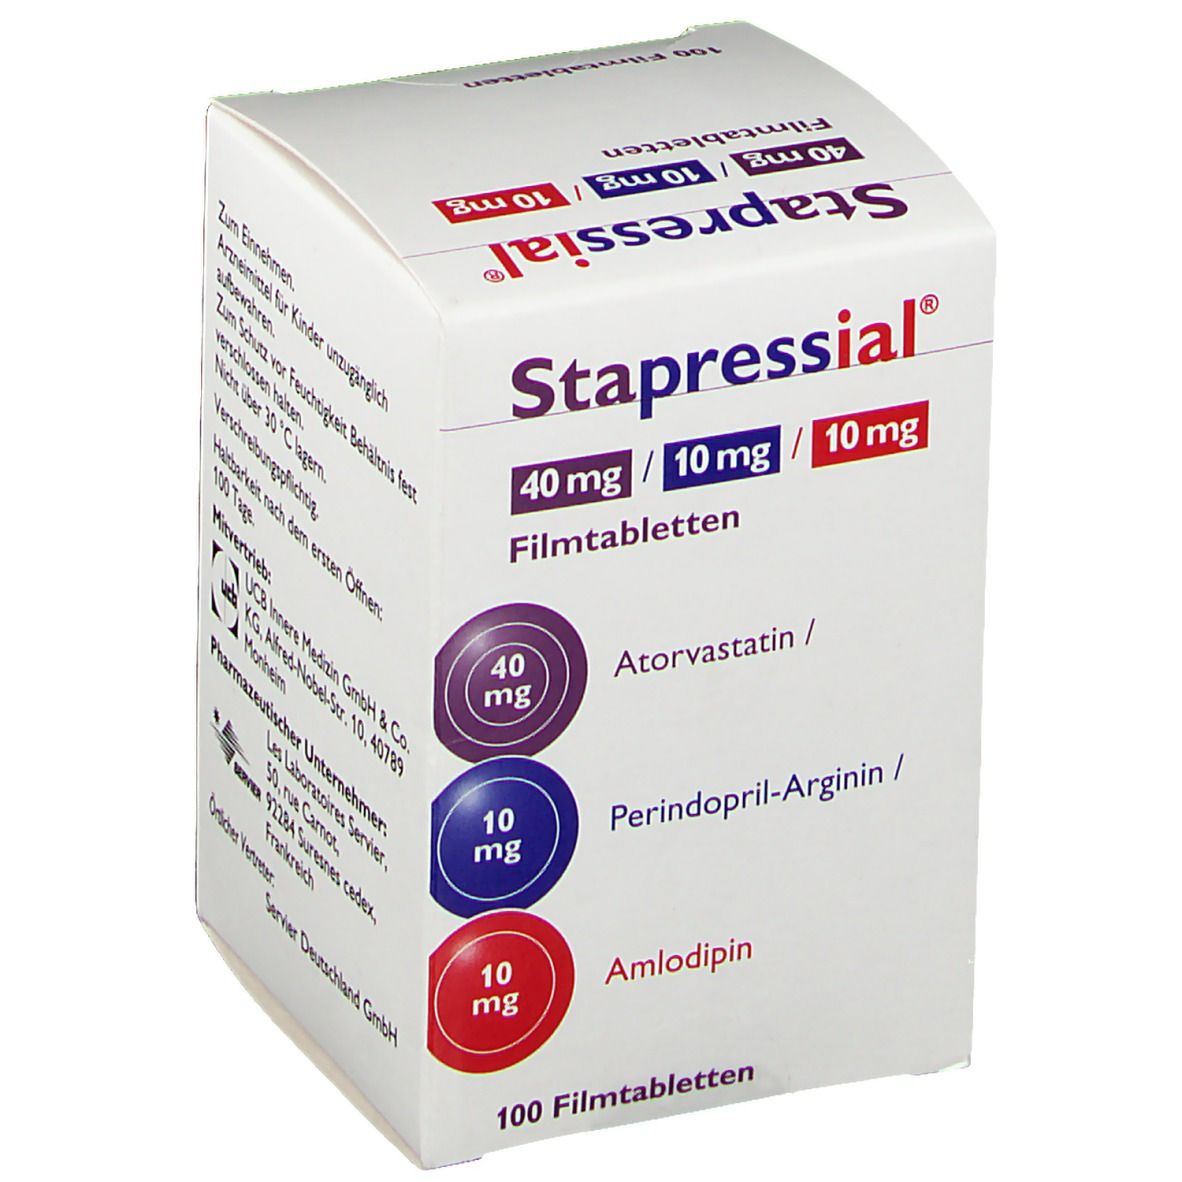 Stapressial® 40 mg/10 mg/10 mg